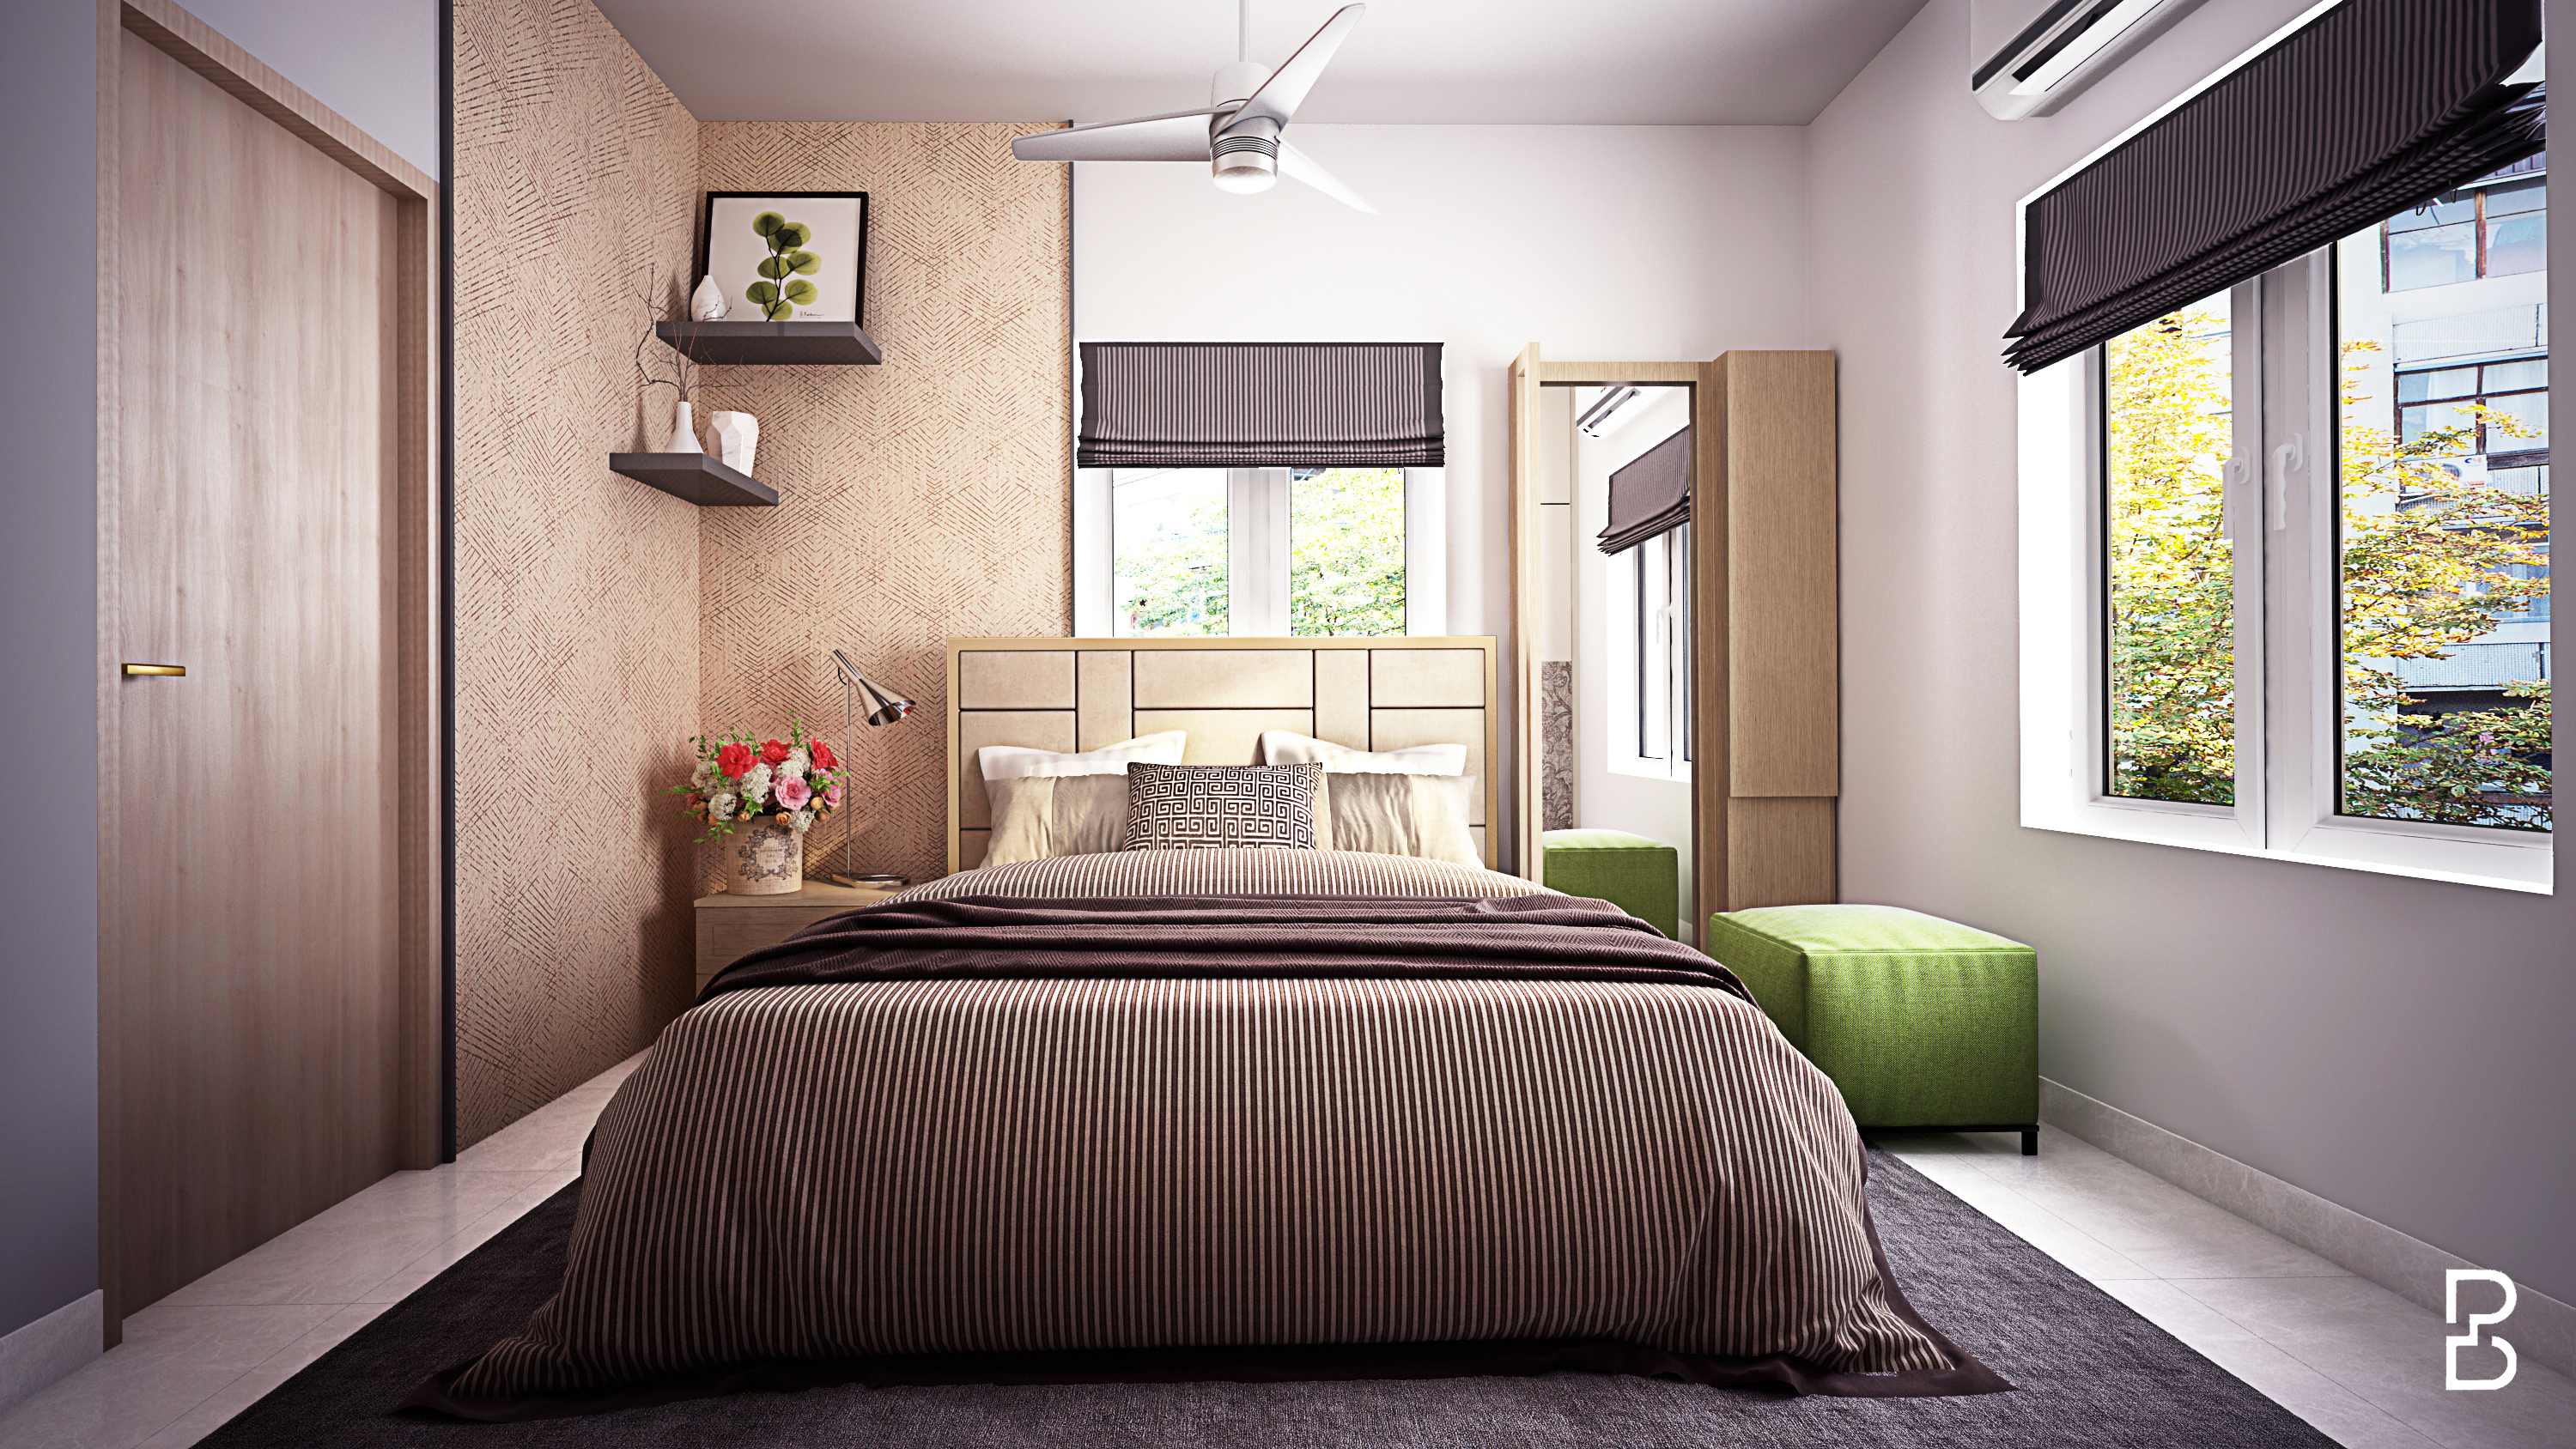 Master bedroom design according to vastu